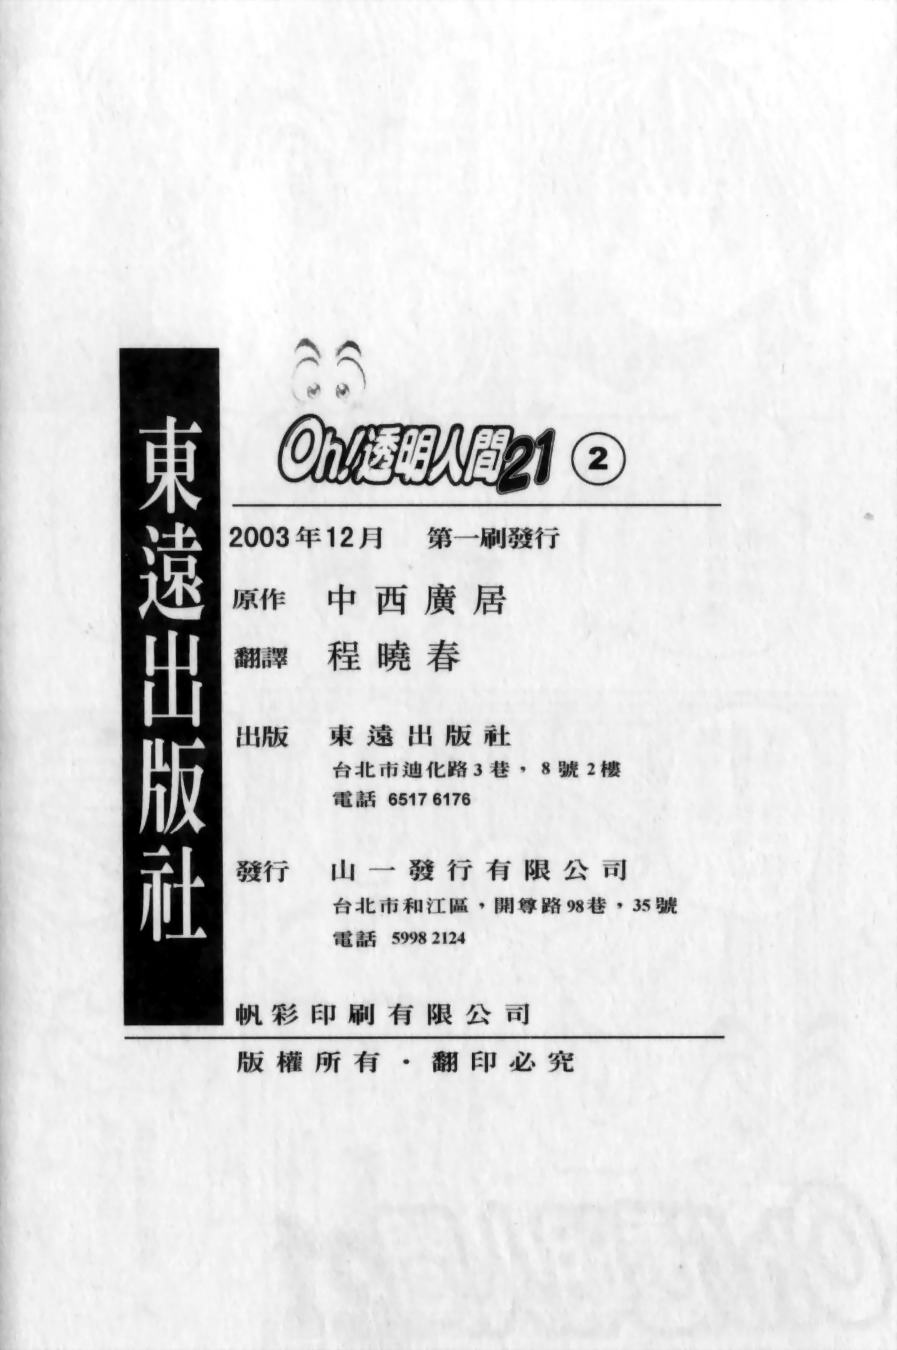 [中西廣居] OH!透明人間21 VOL. 2 (Chinese) 